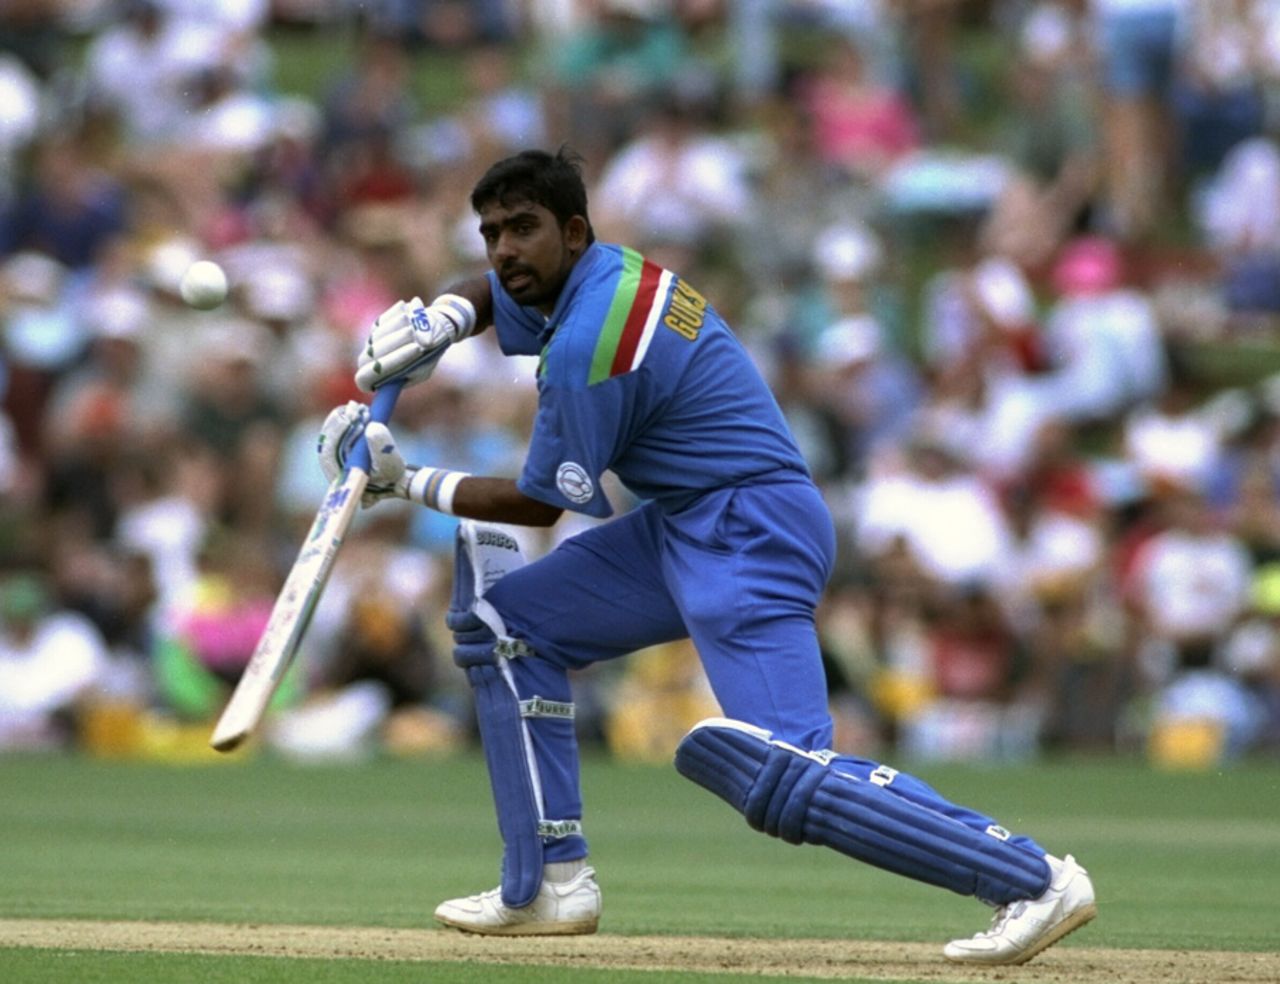 Asanka Gurusinha was caught behind for 9, New Zealand v Sri Lanka, World Cup, Hamilton, February 25, 1992